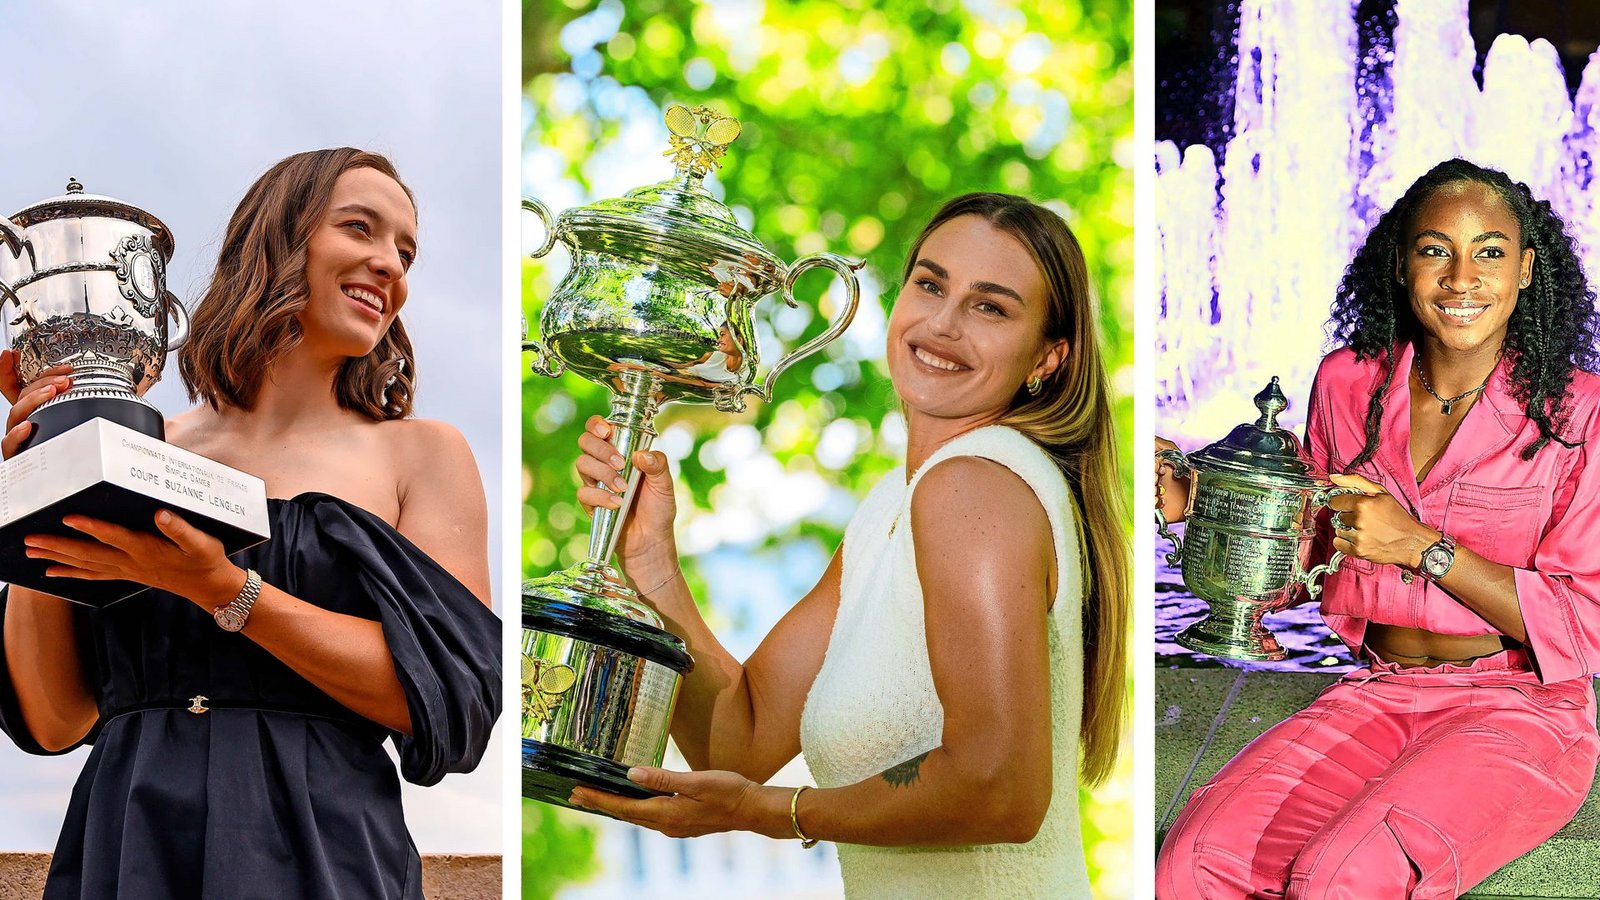 Aktuell die Besten der Welt: Iga Swiatek, Aryna Sabalenka, Coco Gauff (v.li.). In unserer Bildergalerie finden Sie alle Stars des Porsche Tennis Grand PrixFoto: Baumann